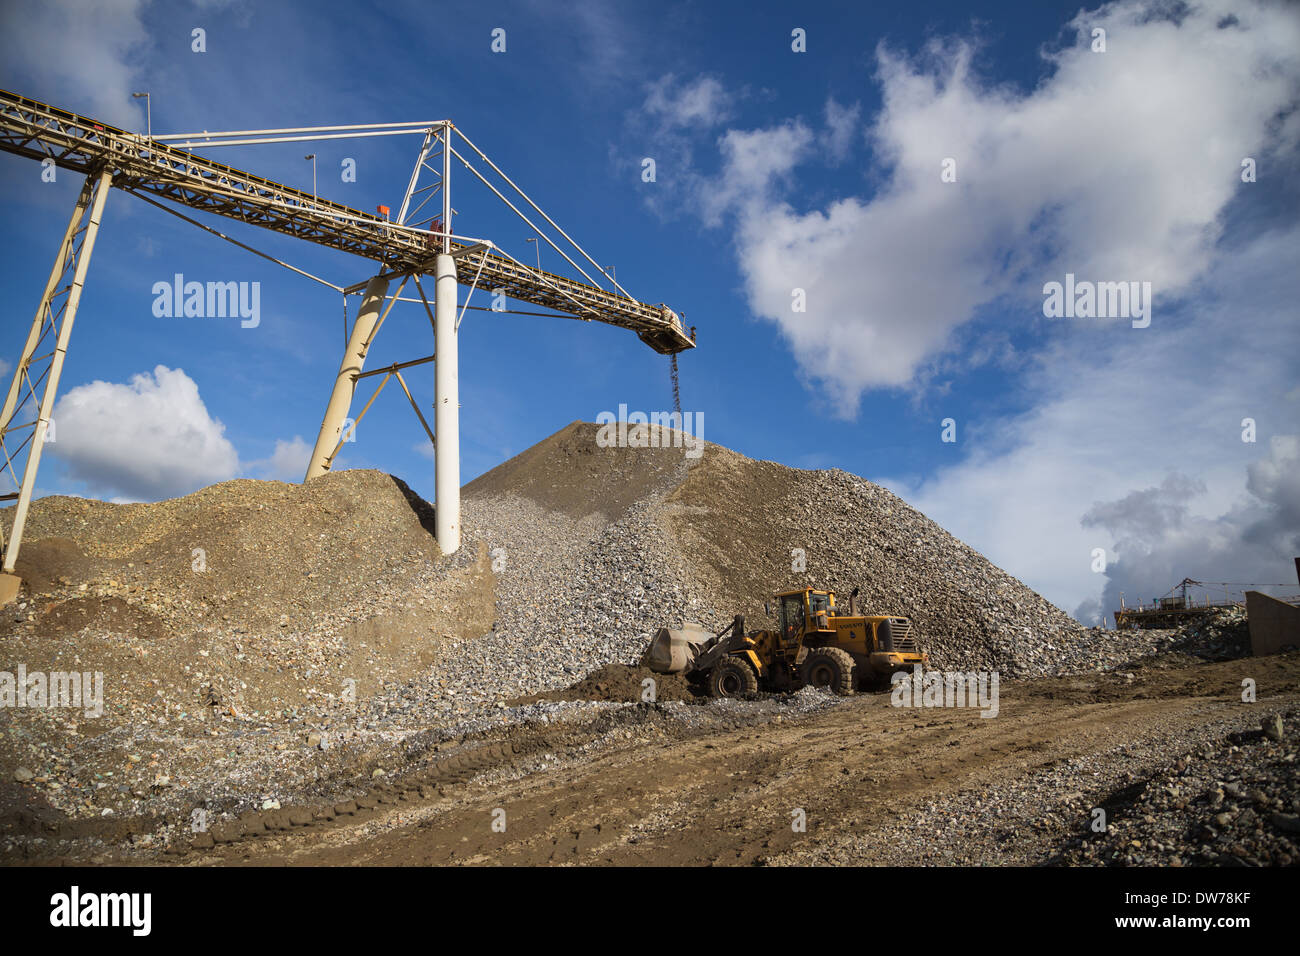 Le minerai de cuivre se situe à l'extrémité d'une courroie de transport pour une réserve à ciel ouvert dans une grande mine de cuivre et d'or Banque D'Images